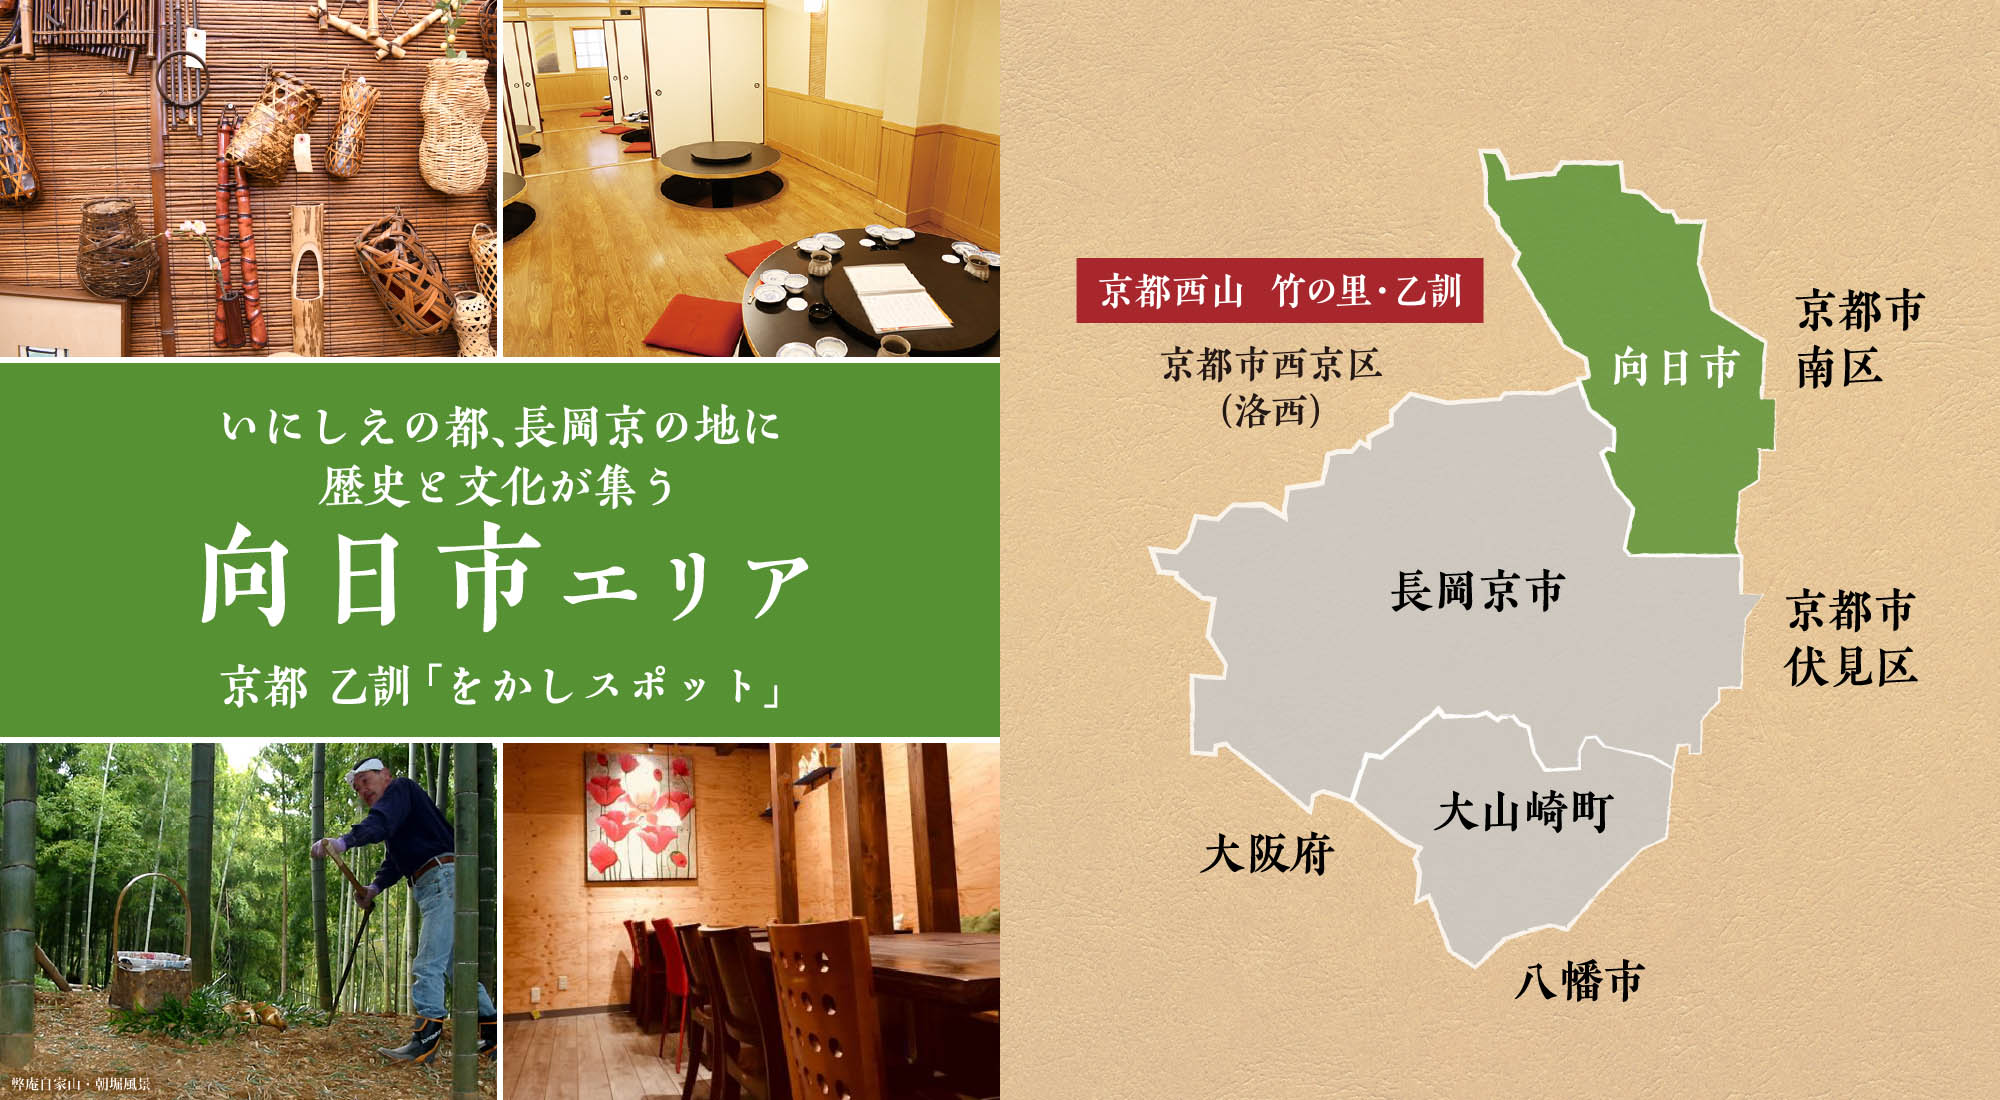 いにしえの都、長岡京の地に歴史と文化が集う向日市エリア「をかしスポット」